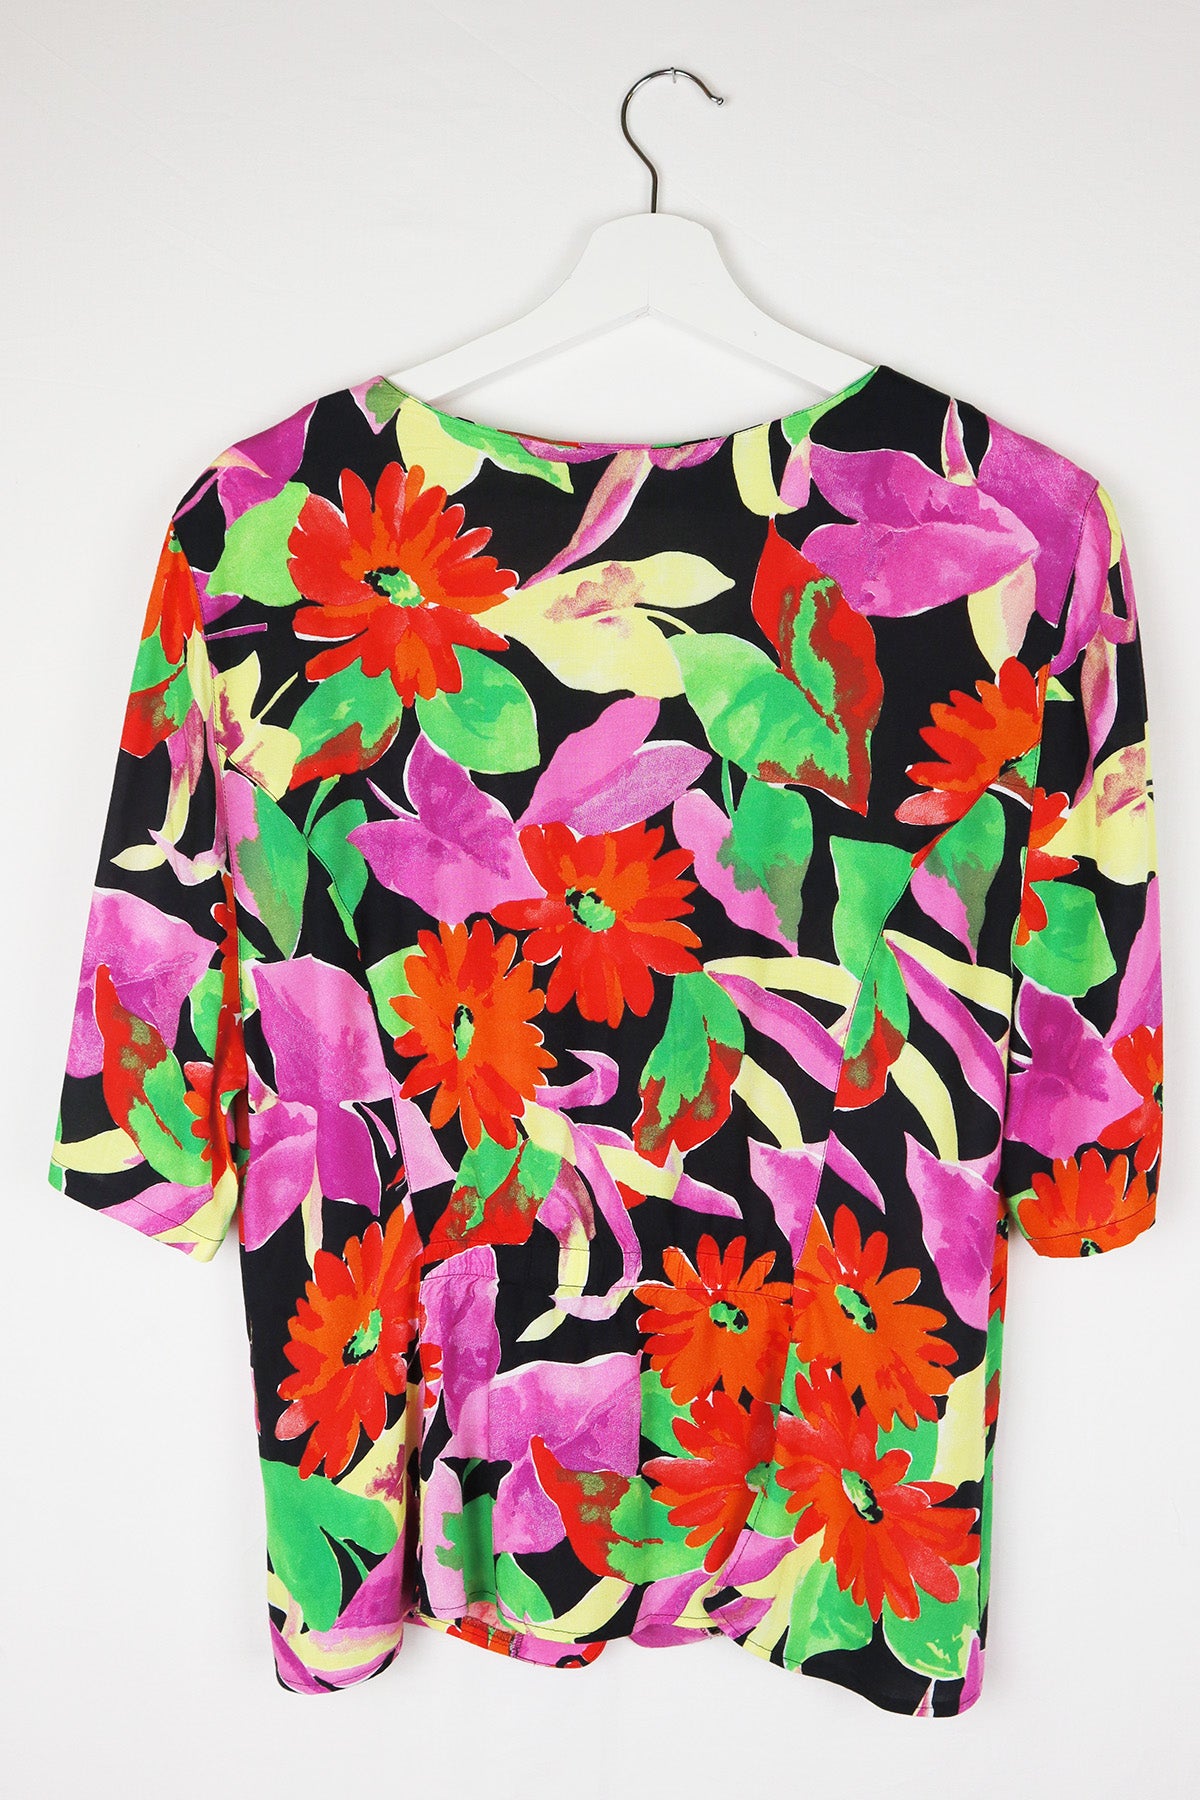 Bluse Vintage Blumen Allover ( Gr. M-XL )